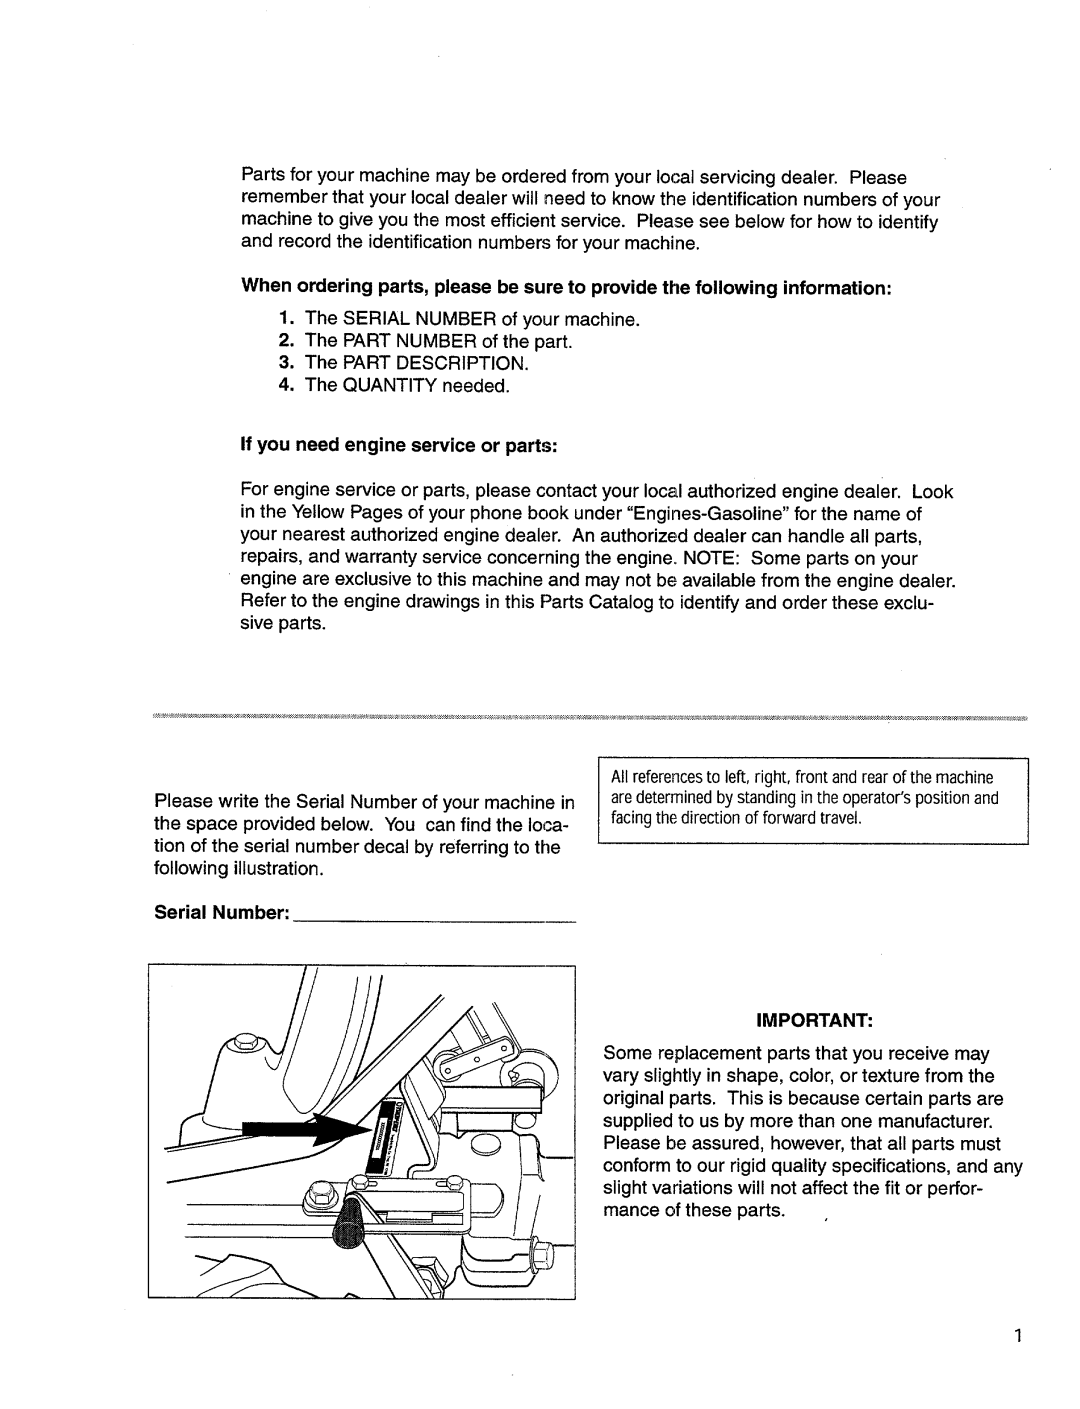 Bolens 12067 manual 